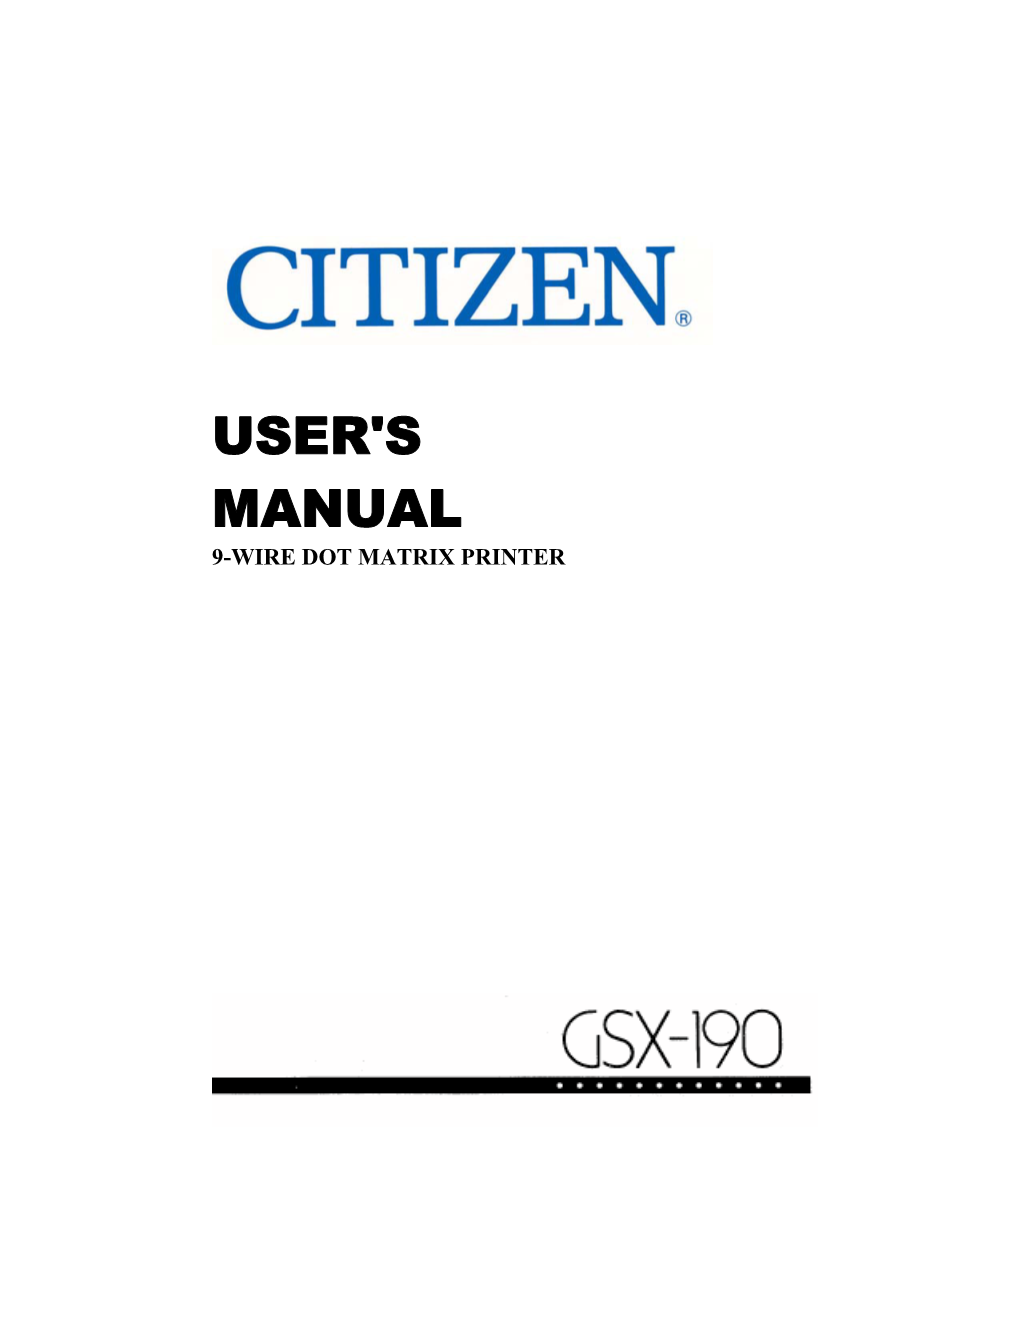 CITIZEN® GSX-190 User's Manual